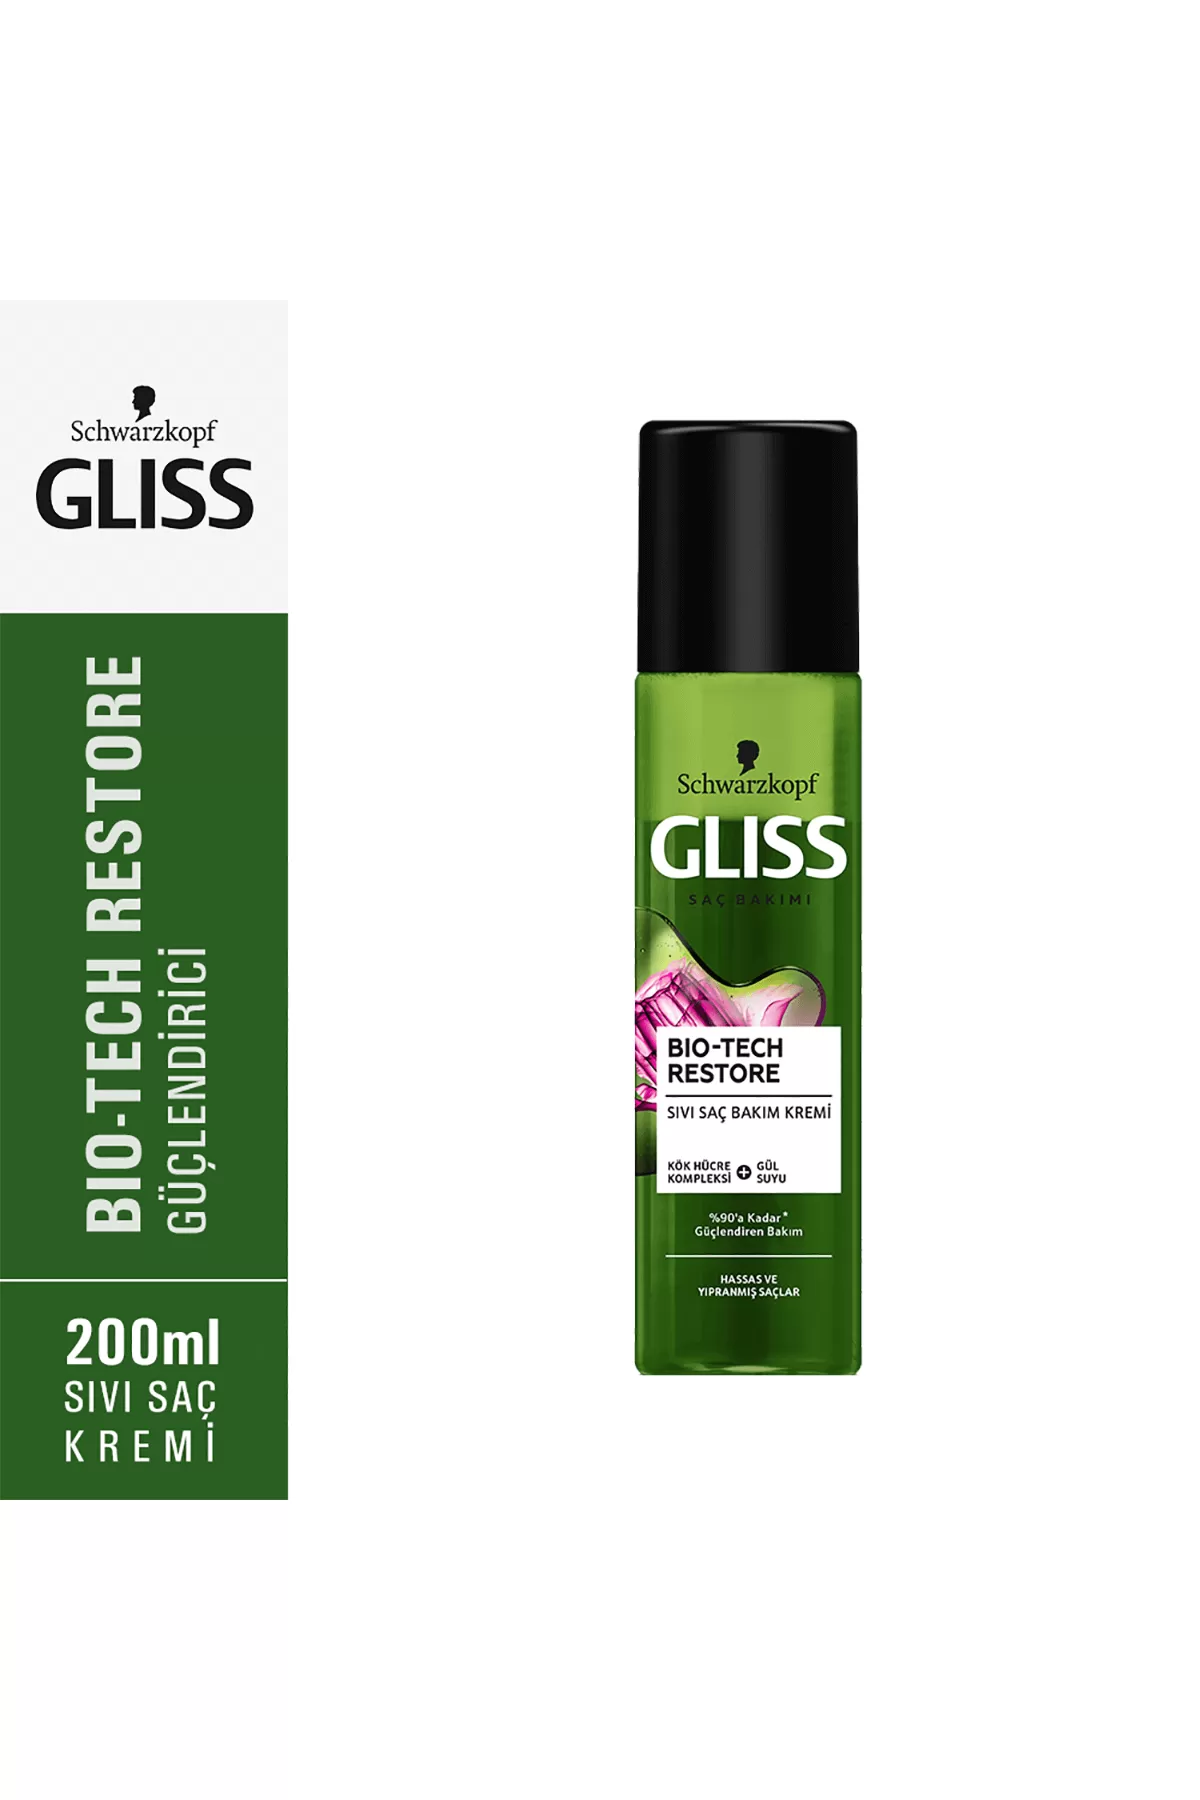 حاوی عصاره گل نرم کننده و درخشان کننده مو گیلیس GLISS اسپری دوفاز